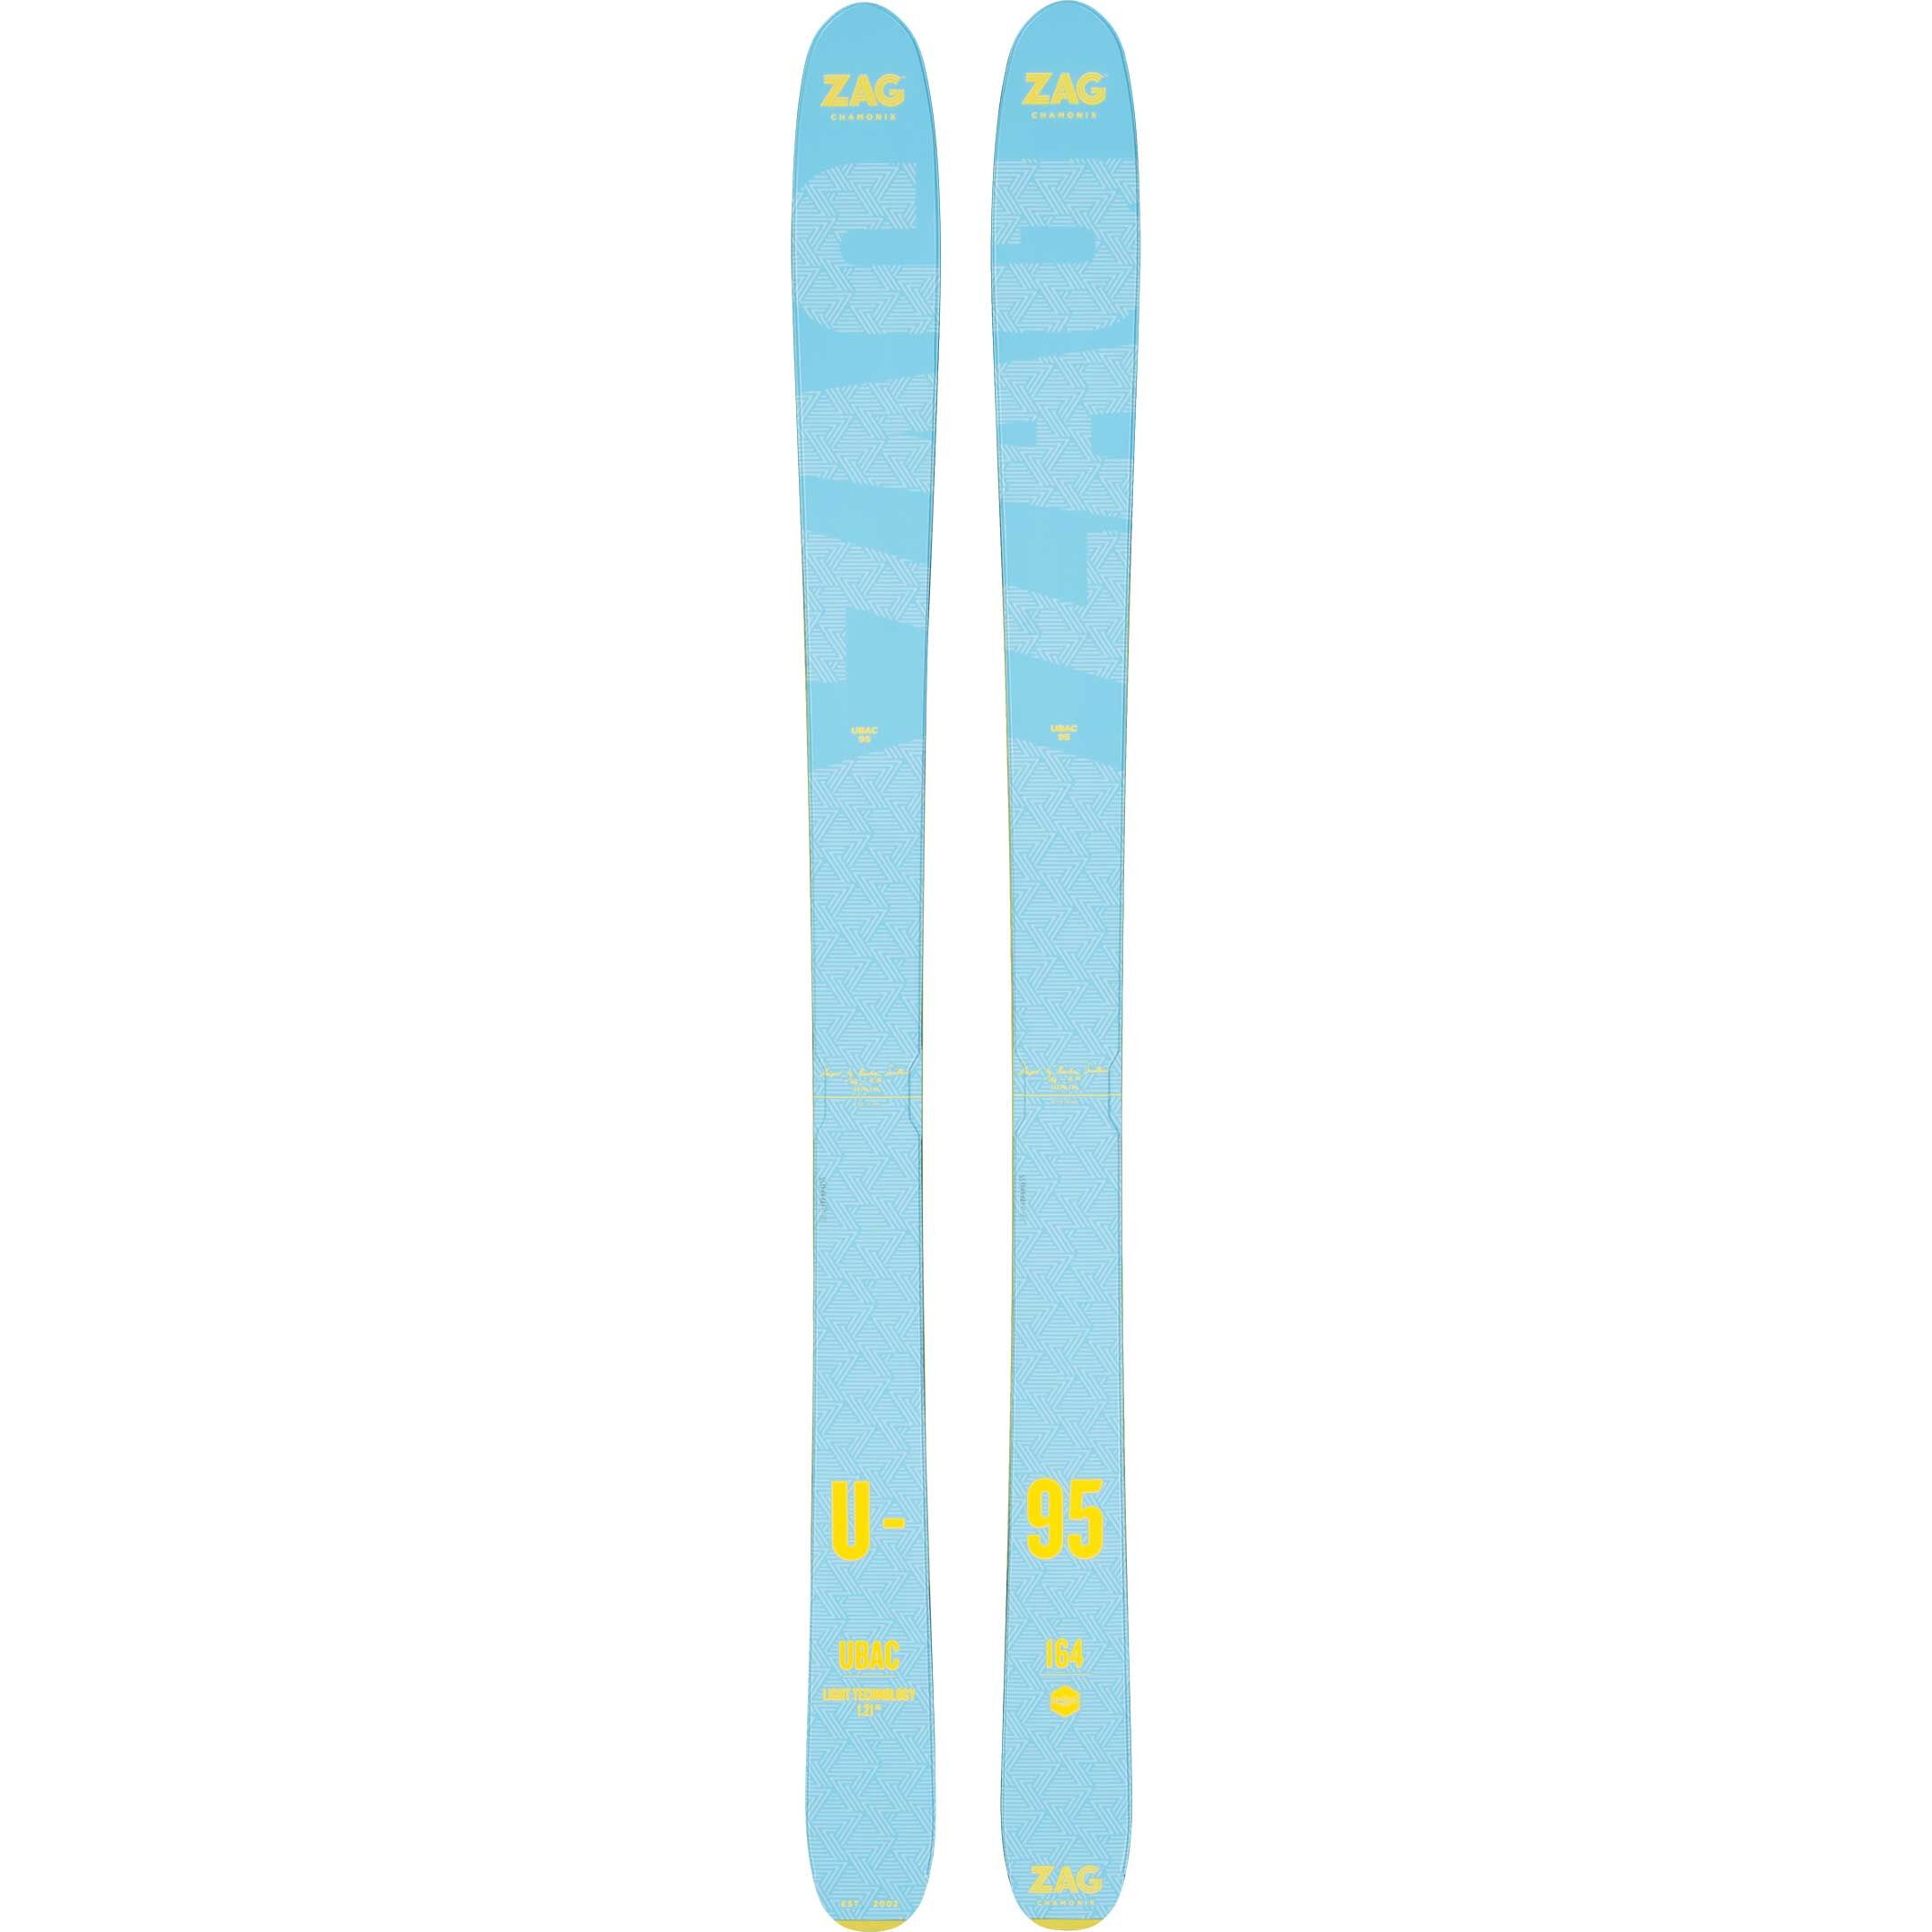 Ski de rando UBAC 95 LADY 2020